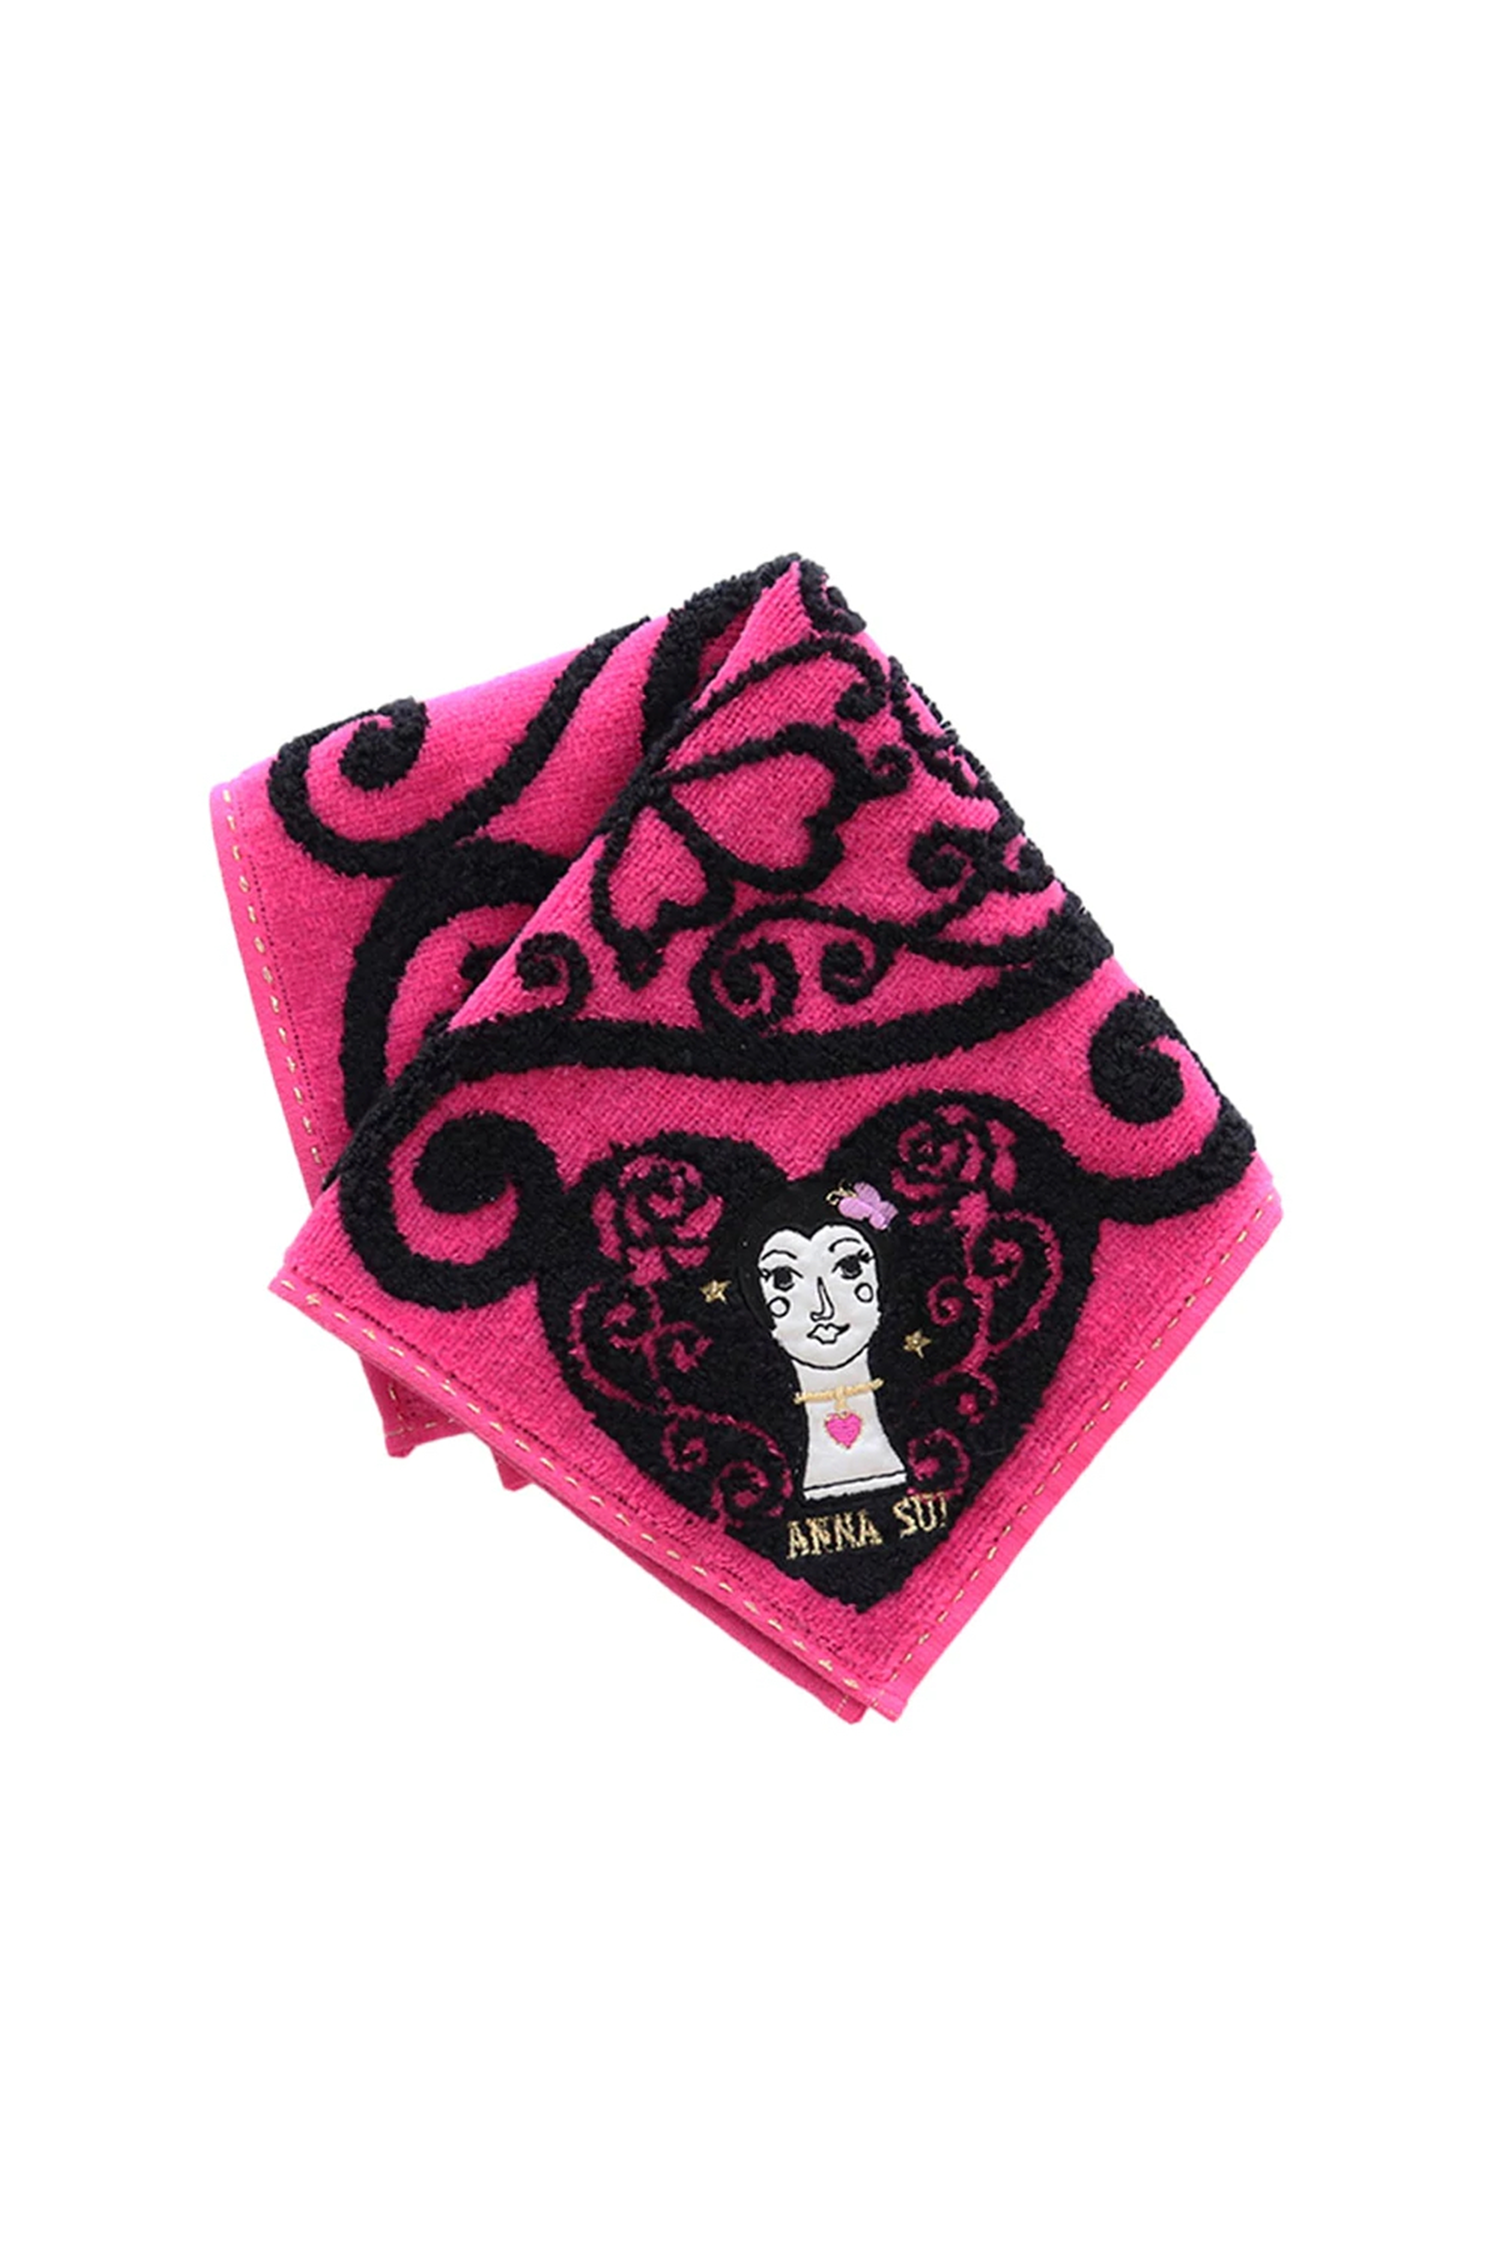 Dolly Head Washcloth - Anna Sui